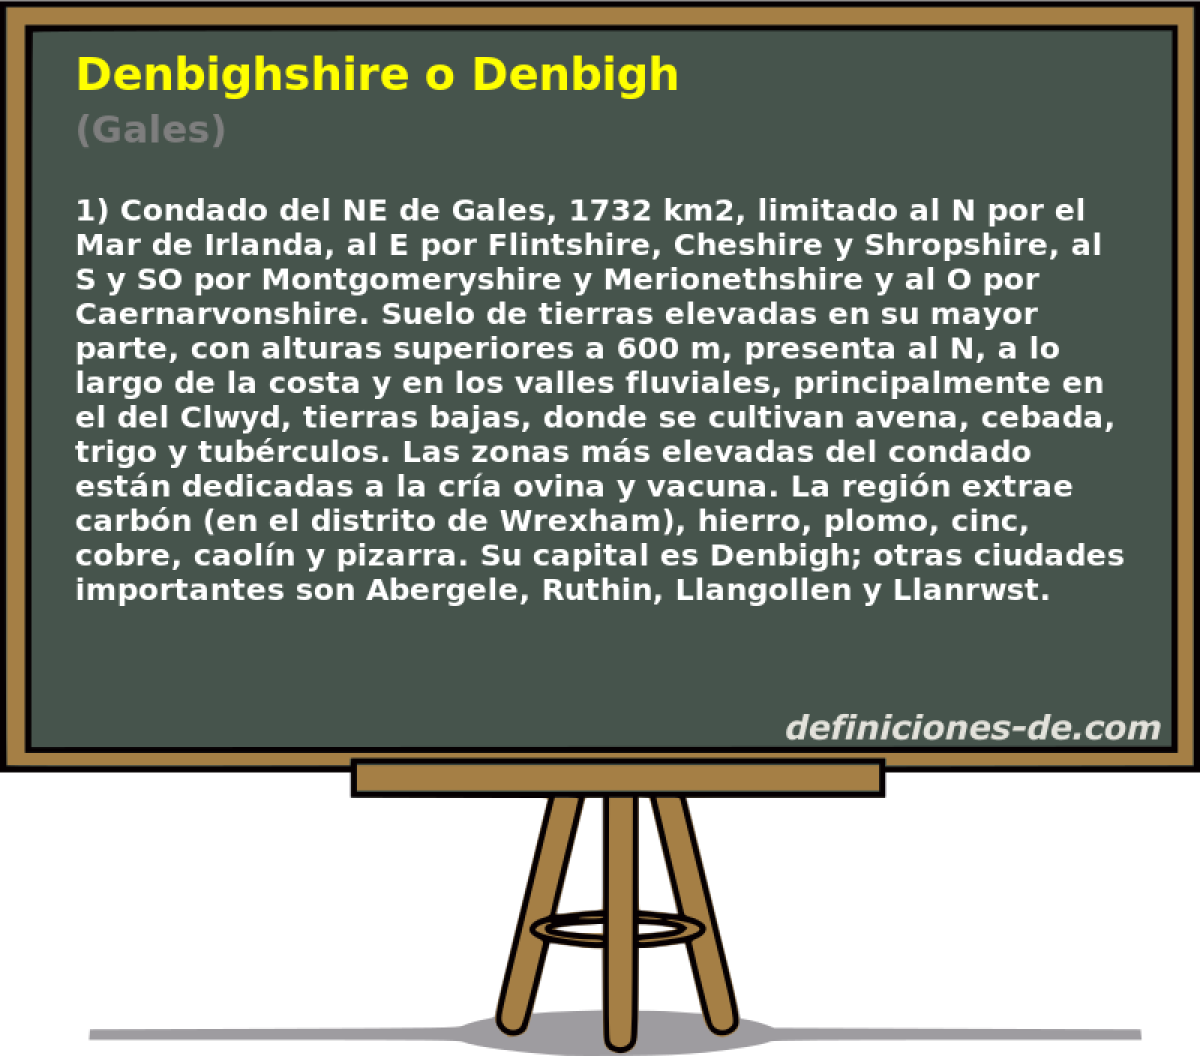 Denbighshire o Denbigh (Gales)